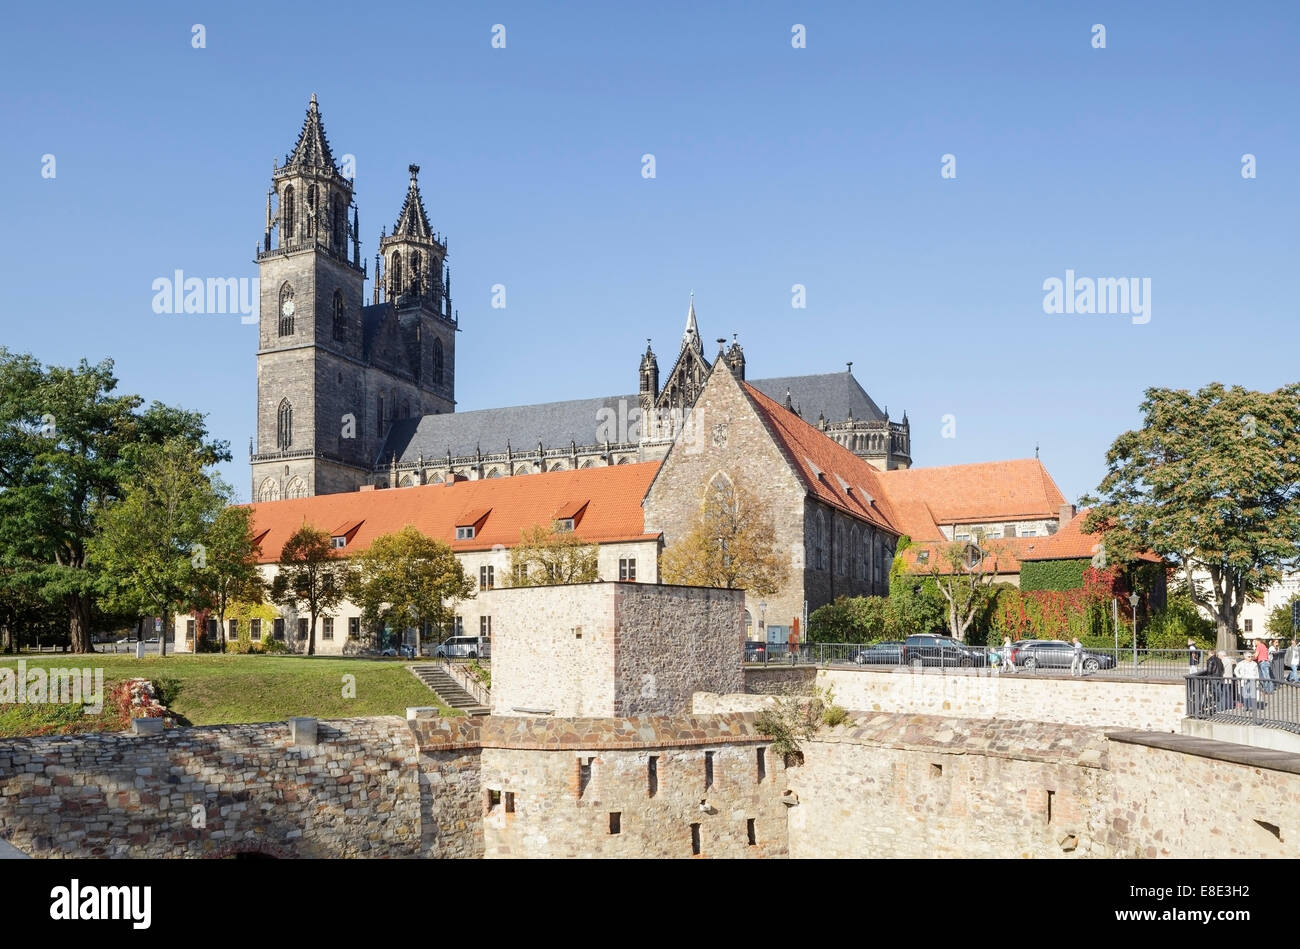 Kathedrale und Bastion Cleve, Magdeburg, Sachsen Anhalt, Deutschland Stockfoto